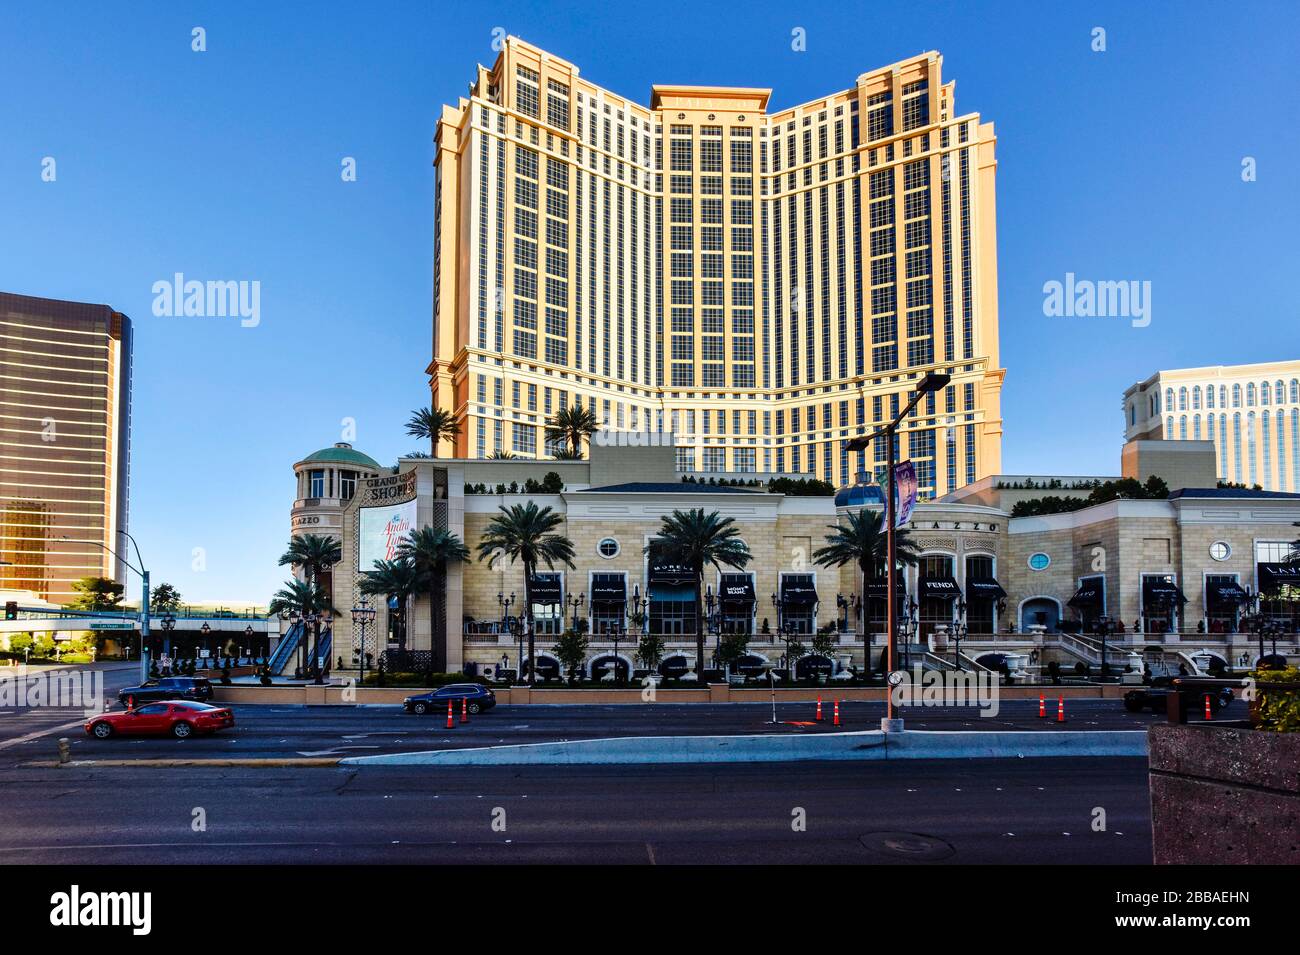 Eine Woche nach der Schließung in Las Vegas wegen Coronavirus ist der Strip ziemlich leer. Keine Menschen auf den Straßen und alles ist geschlossen. Stockfoto